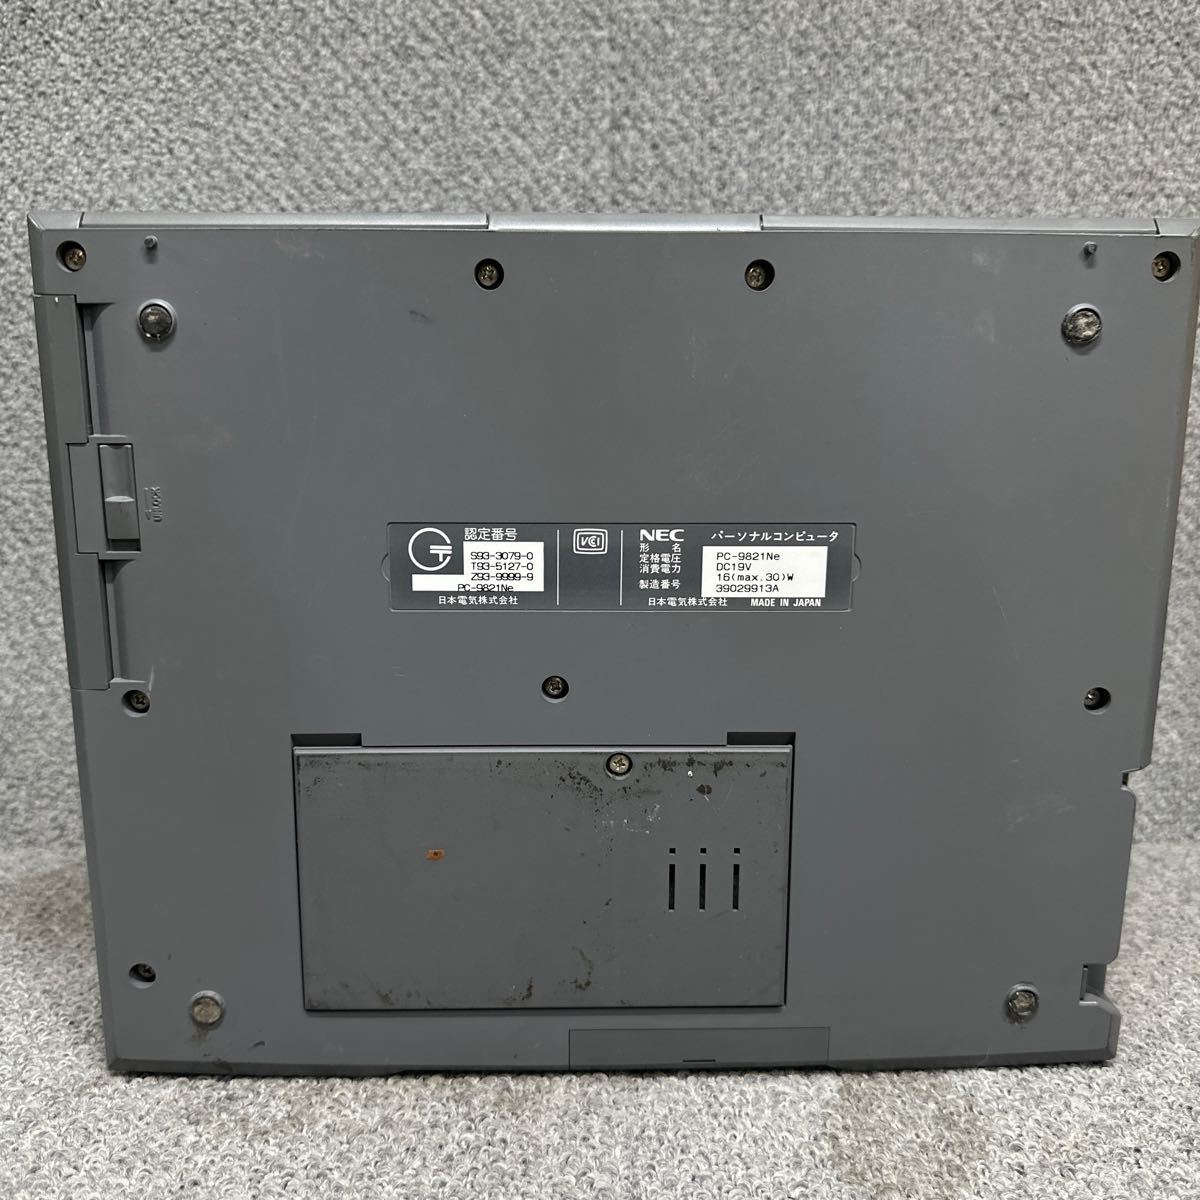 PCN98-1420 супер-скидка PC98 ноутбук NEC PC-9821Ne электризация не возможно Junk включение в покупку возможность 